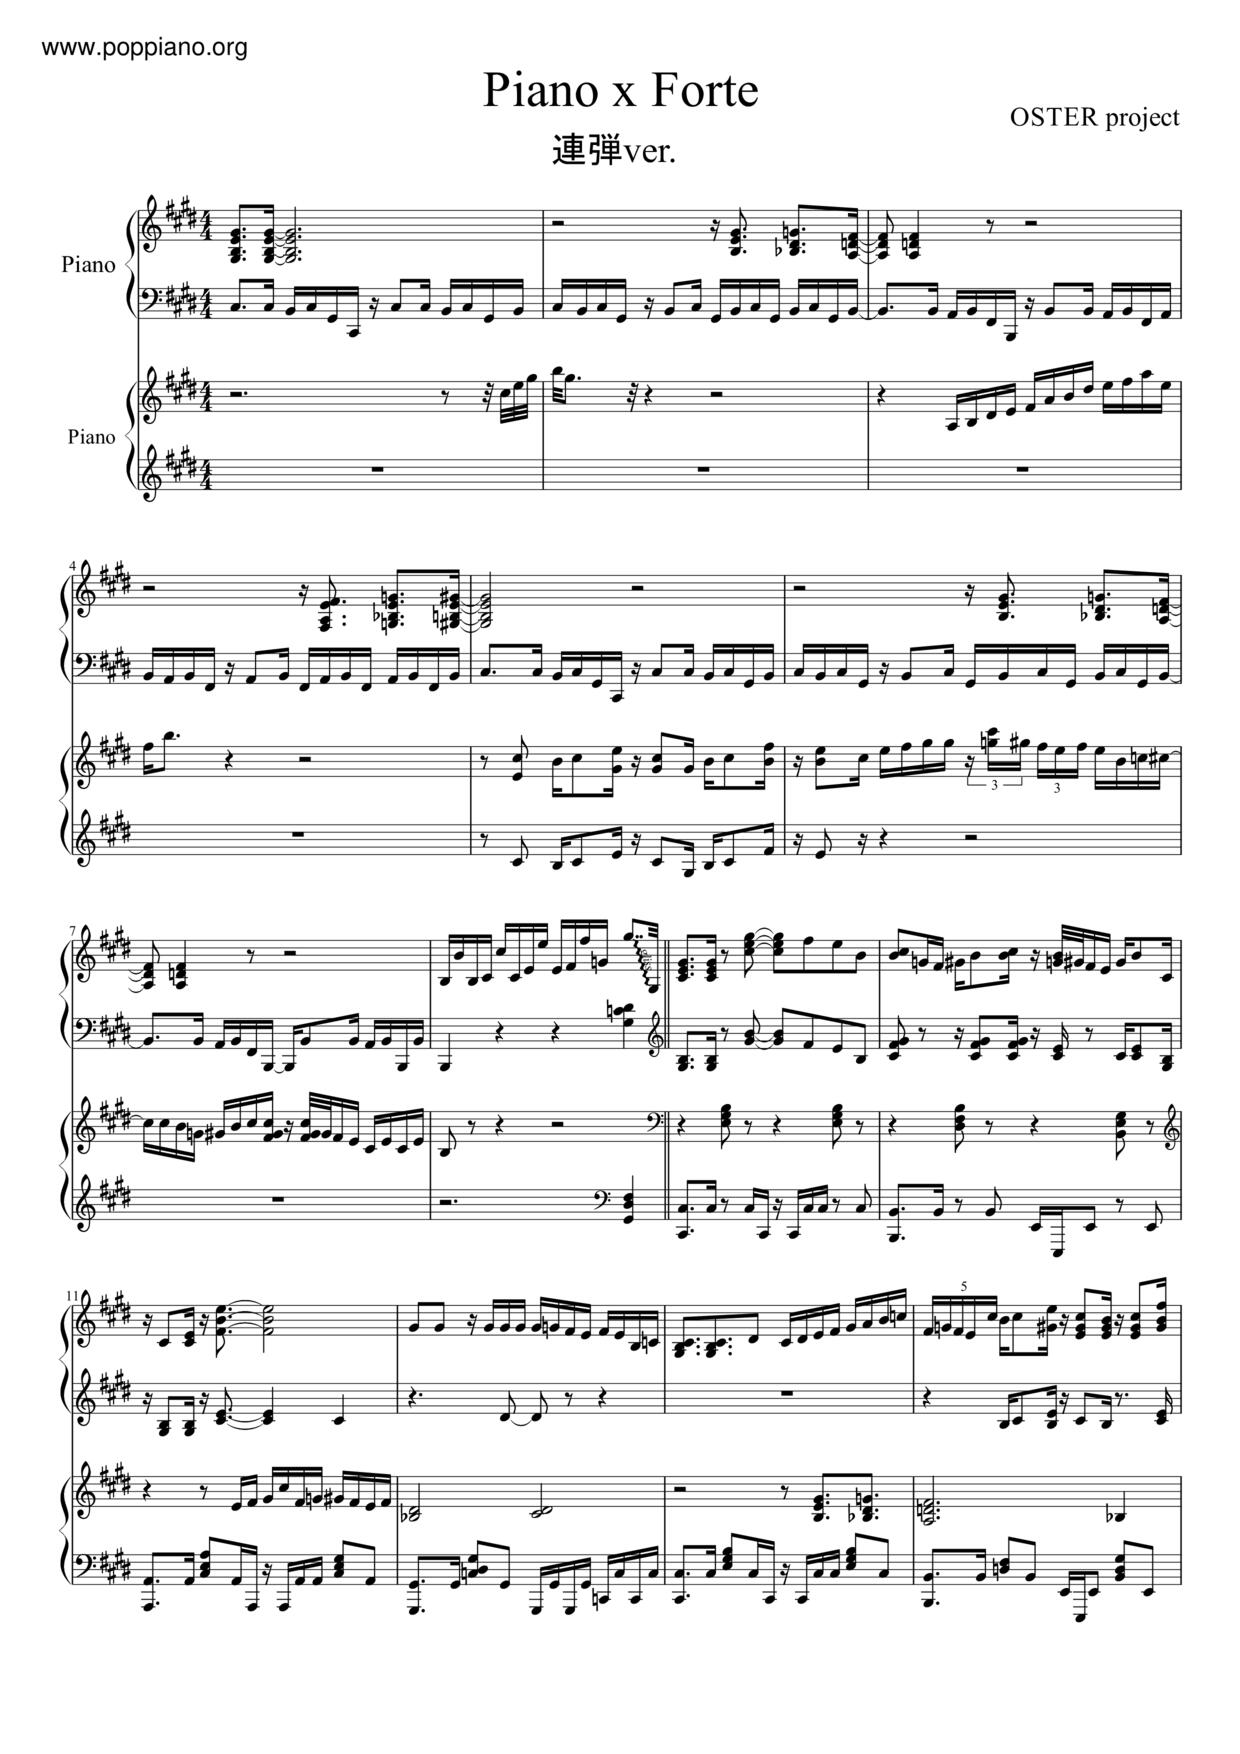 Piano X Forte Score